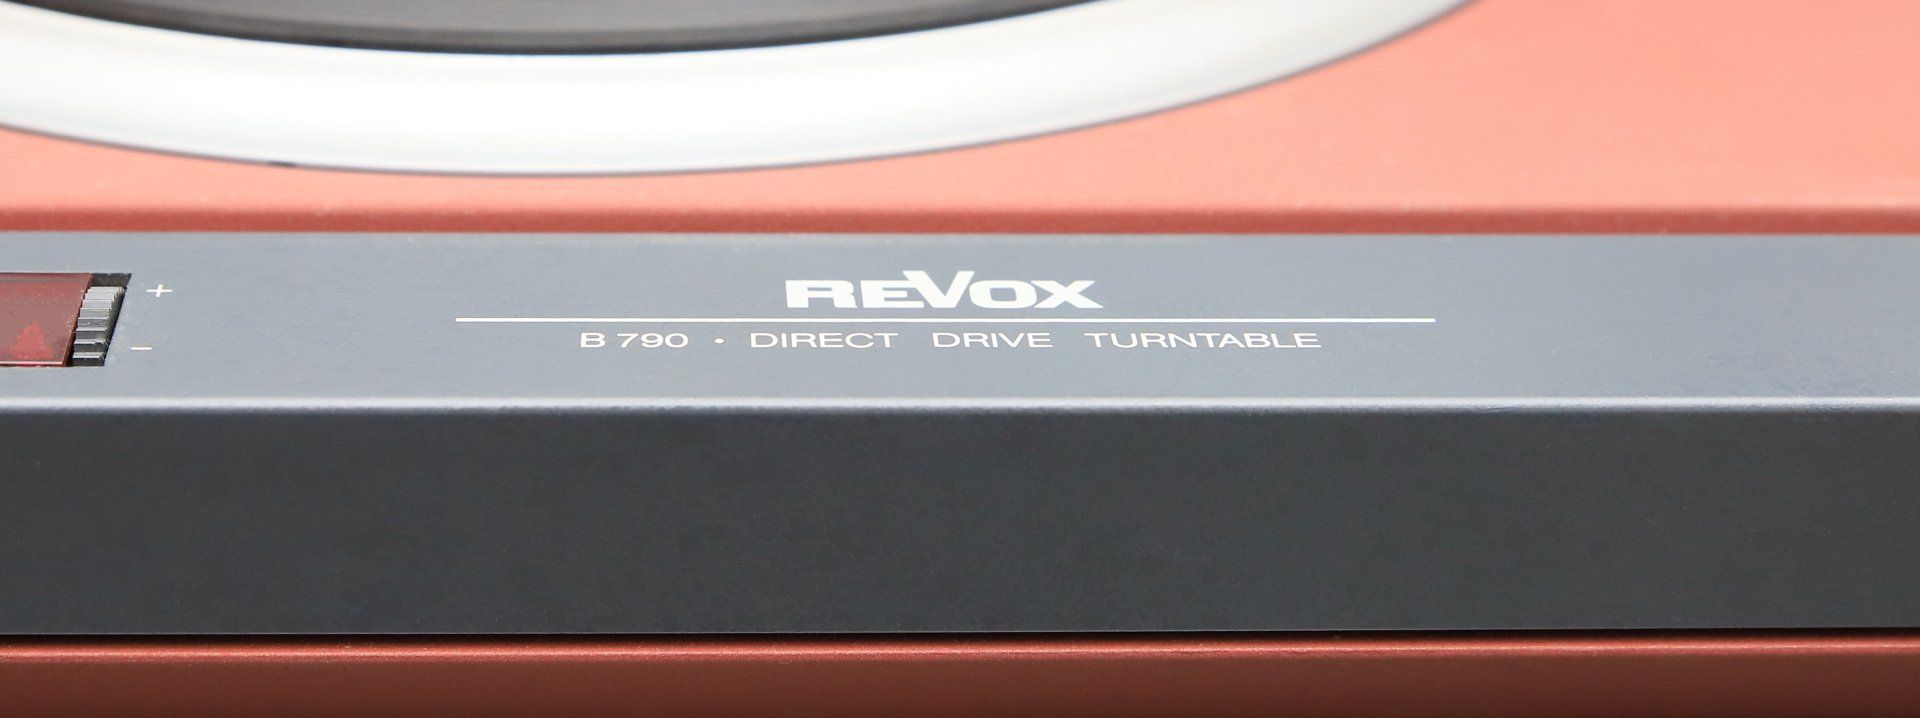 Revox B790 in nextel-red revox-online